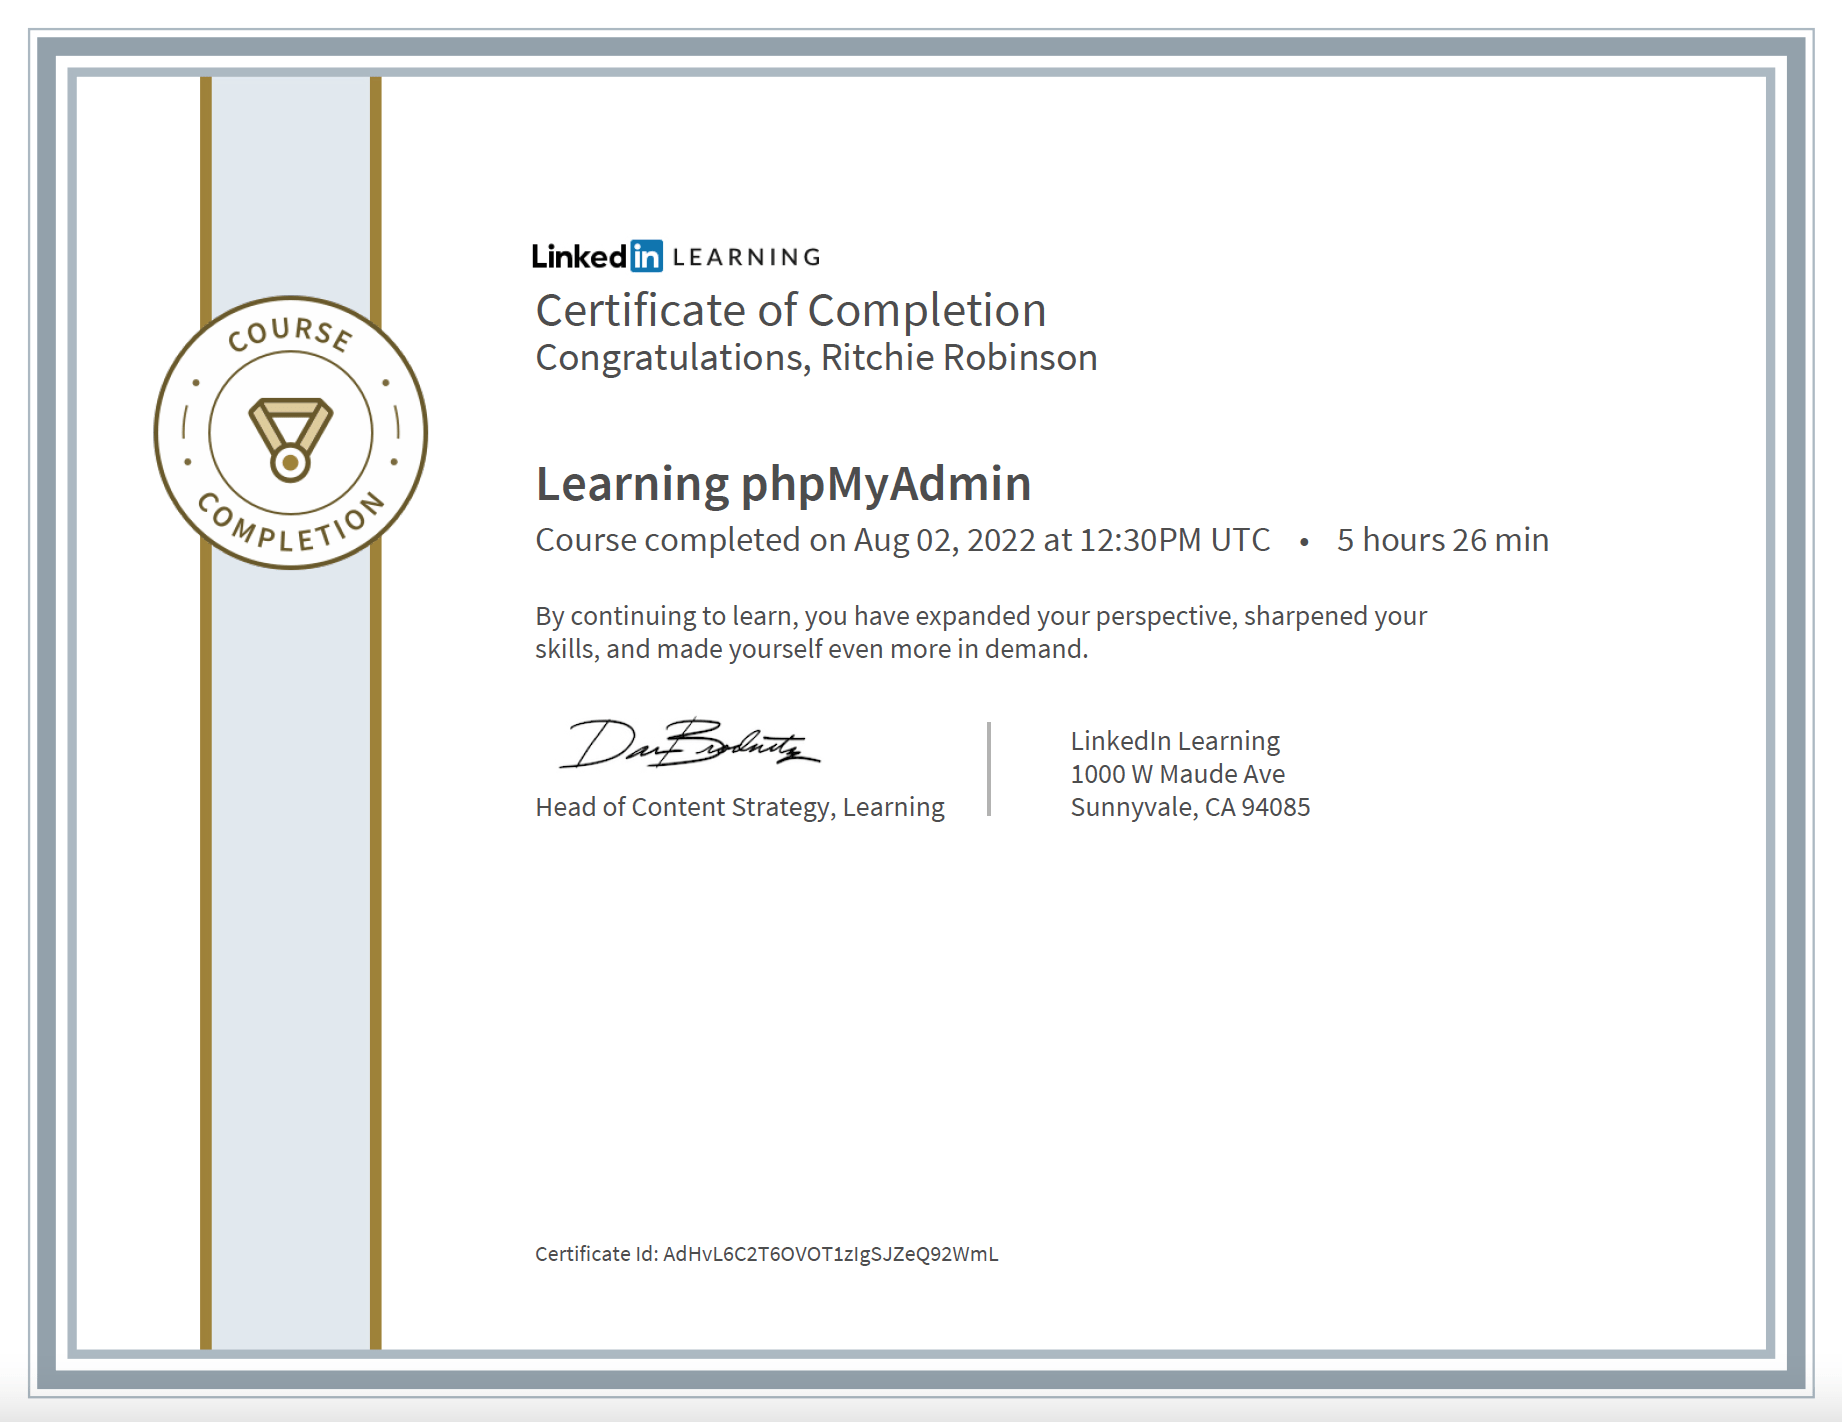 phpmyadmin certificate